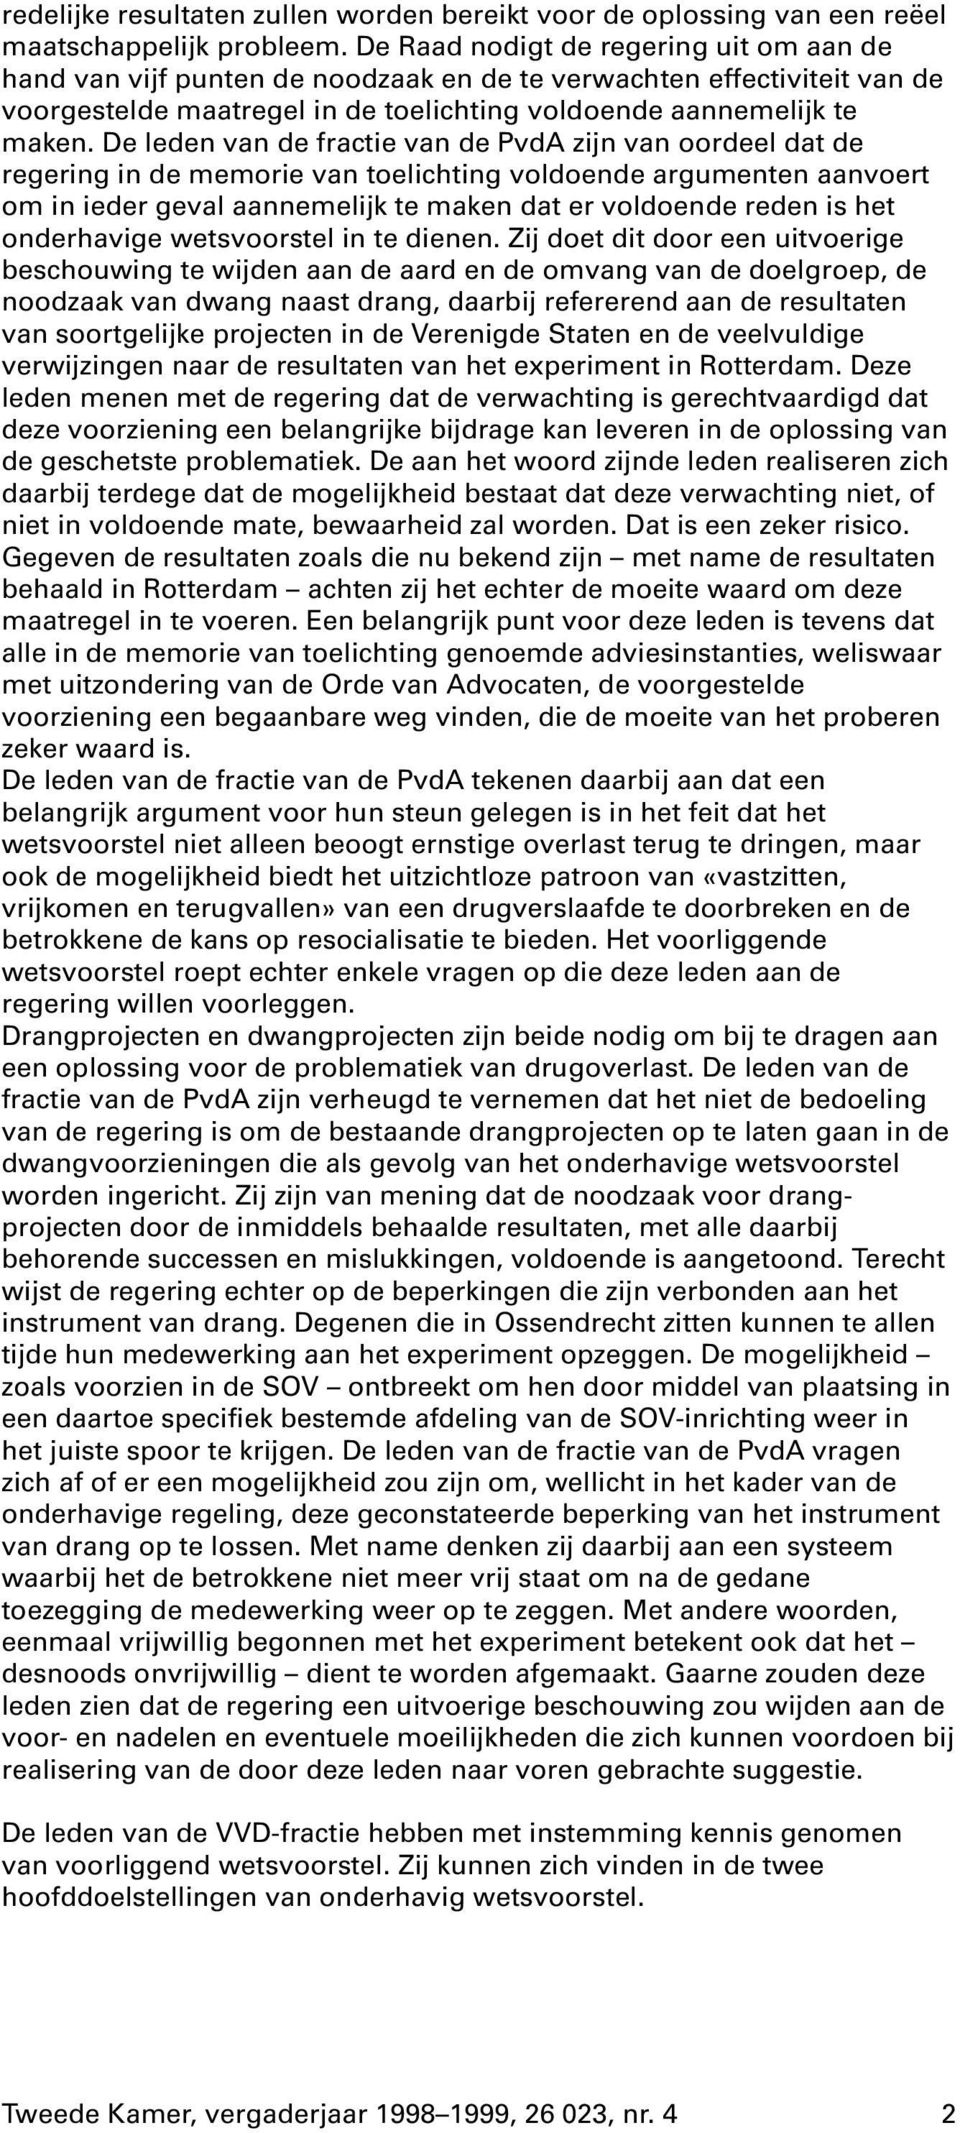 De leden van de fractie van de PvdA zijn van oordeel dat de regering in de memorie van toelichting voldoende argumenten aanvoert om in ieder geval aannemelijk te maken dat er voldoende reden is het